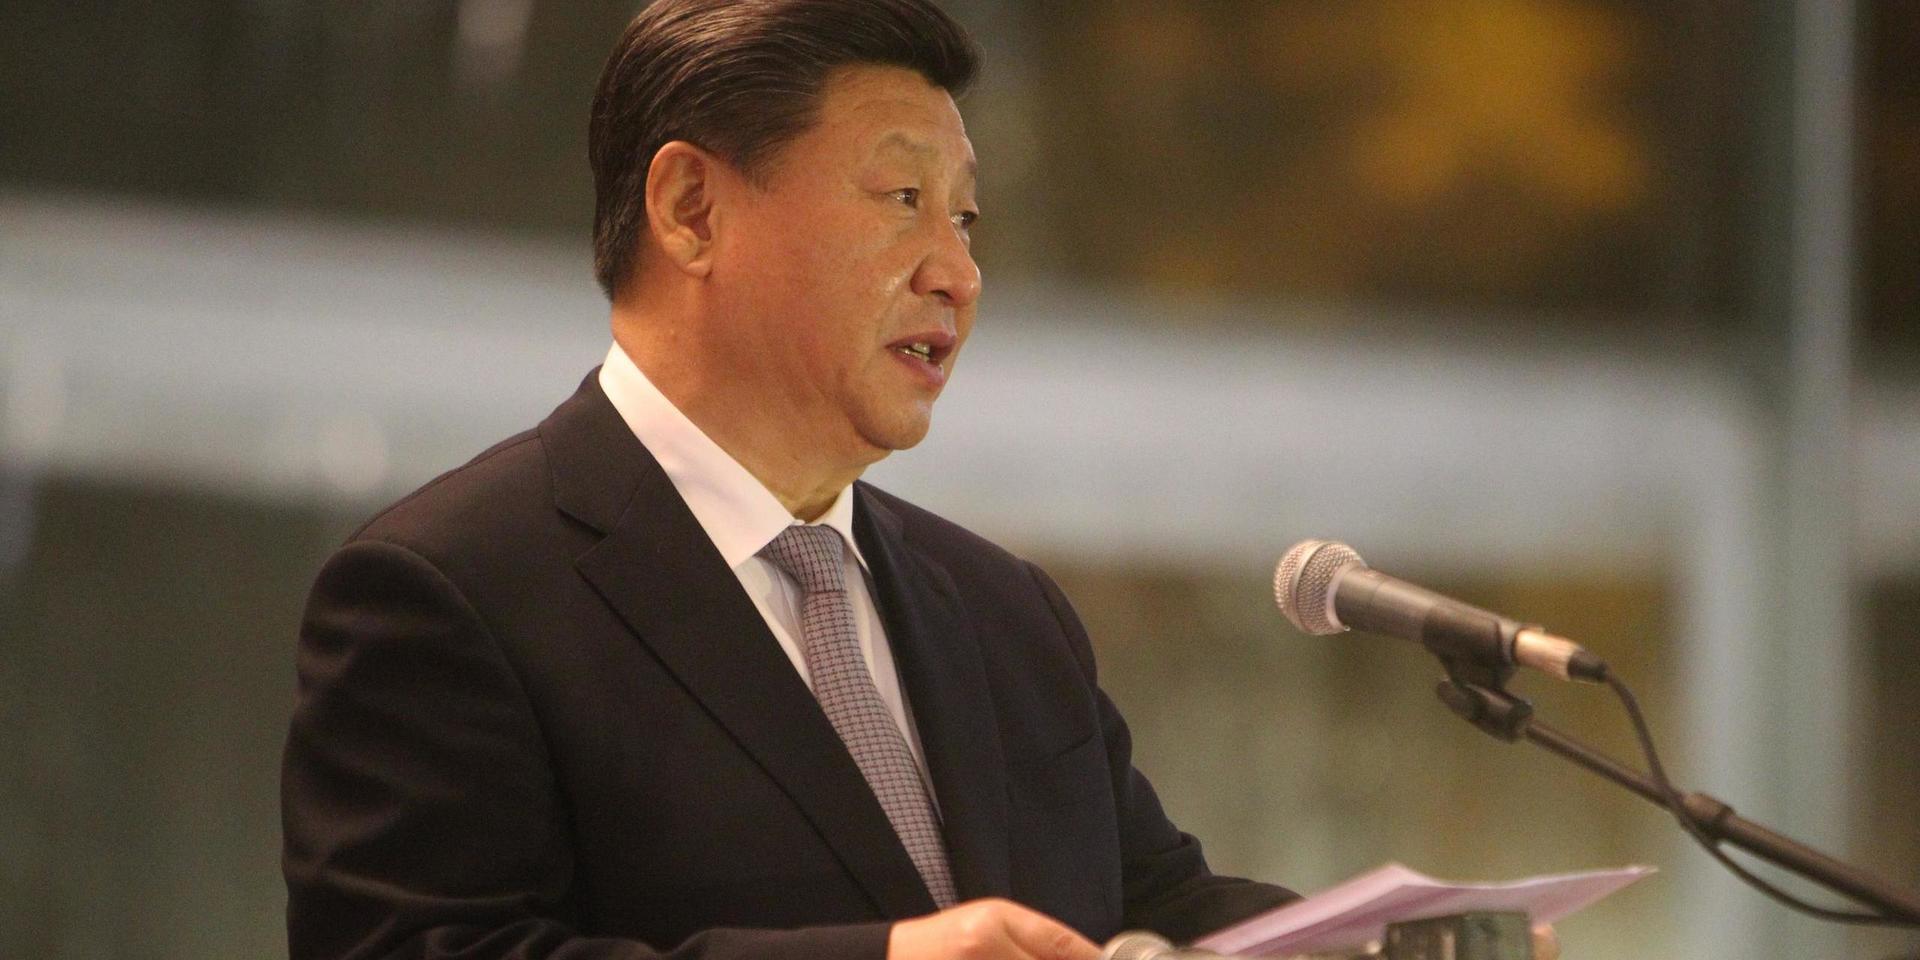 Kinas ledare Xi Jingping har storslagna planer att Kina ska bli en stormakt inom fotbollen. 